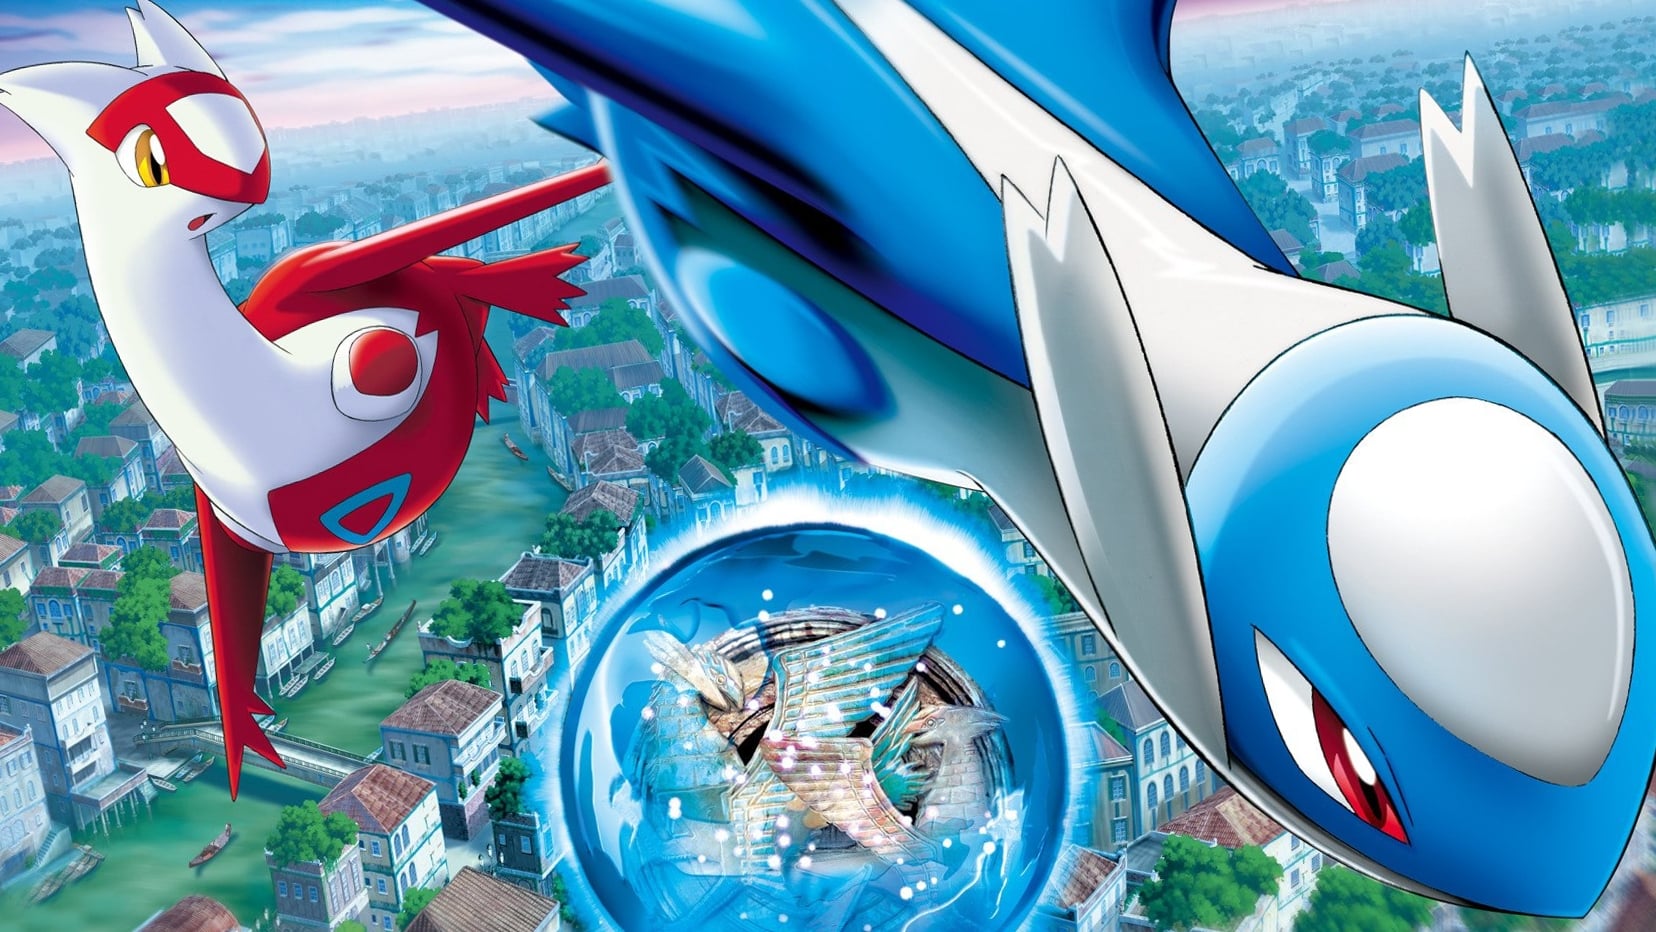 Pokemon movie 5: thần hộ mệnh của thành phố nước latias và latios - Pokemon heroes